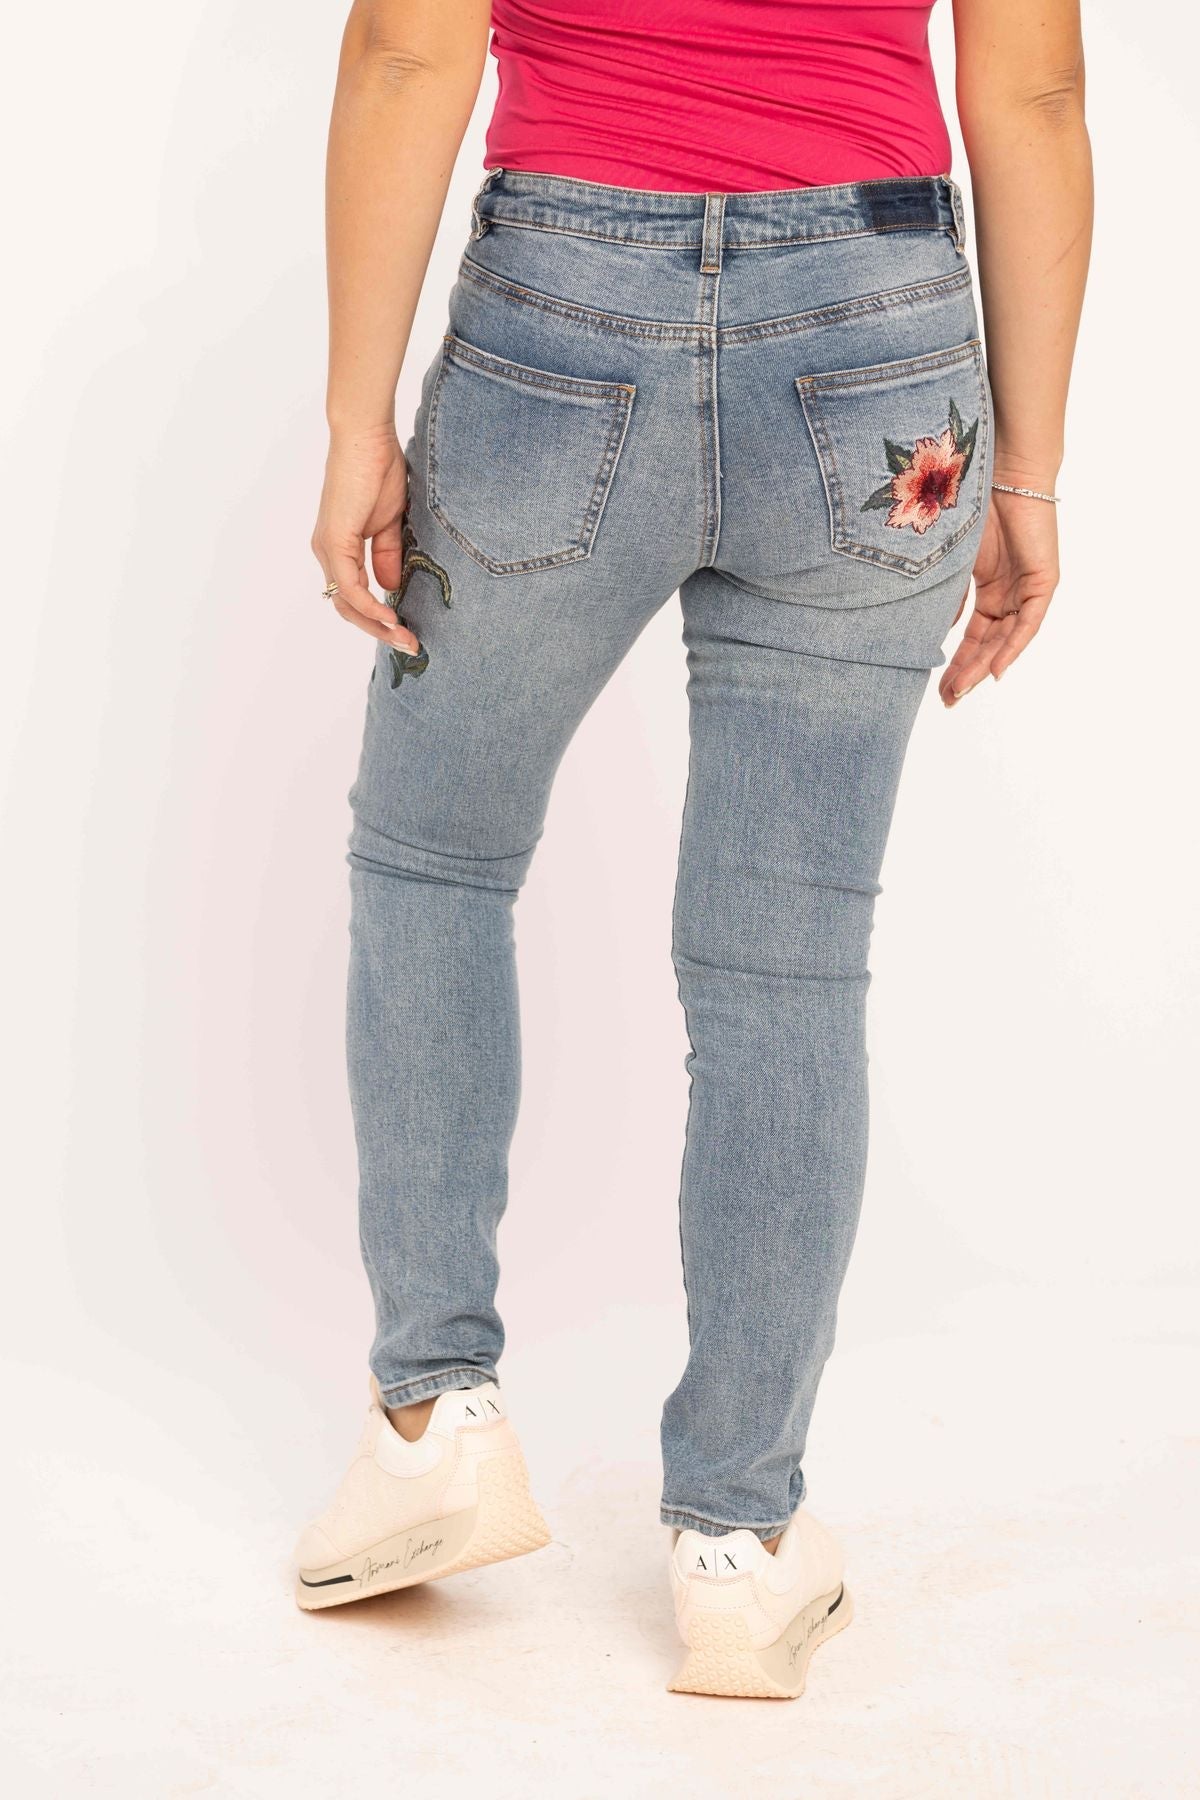 Jeans con ricami - Vero Moda - Taxi Bleu Moda Donna - 2000000046624